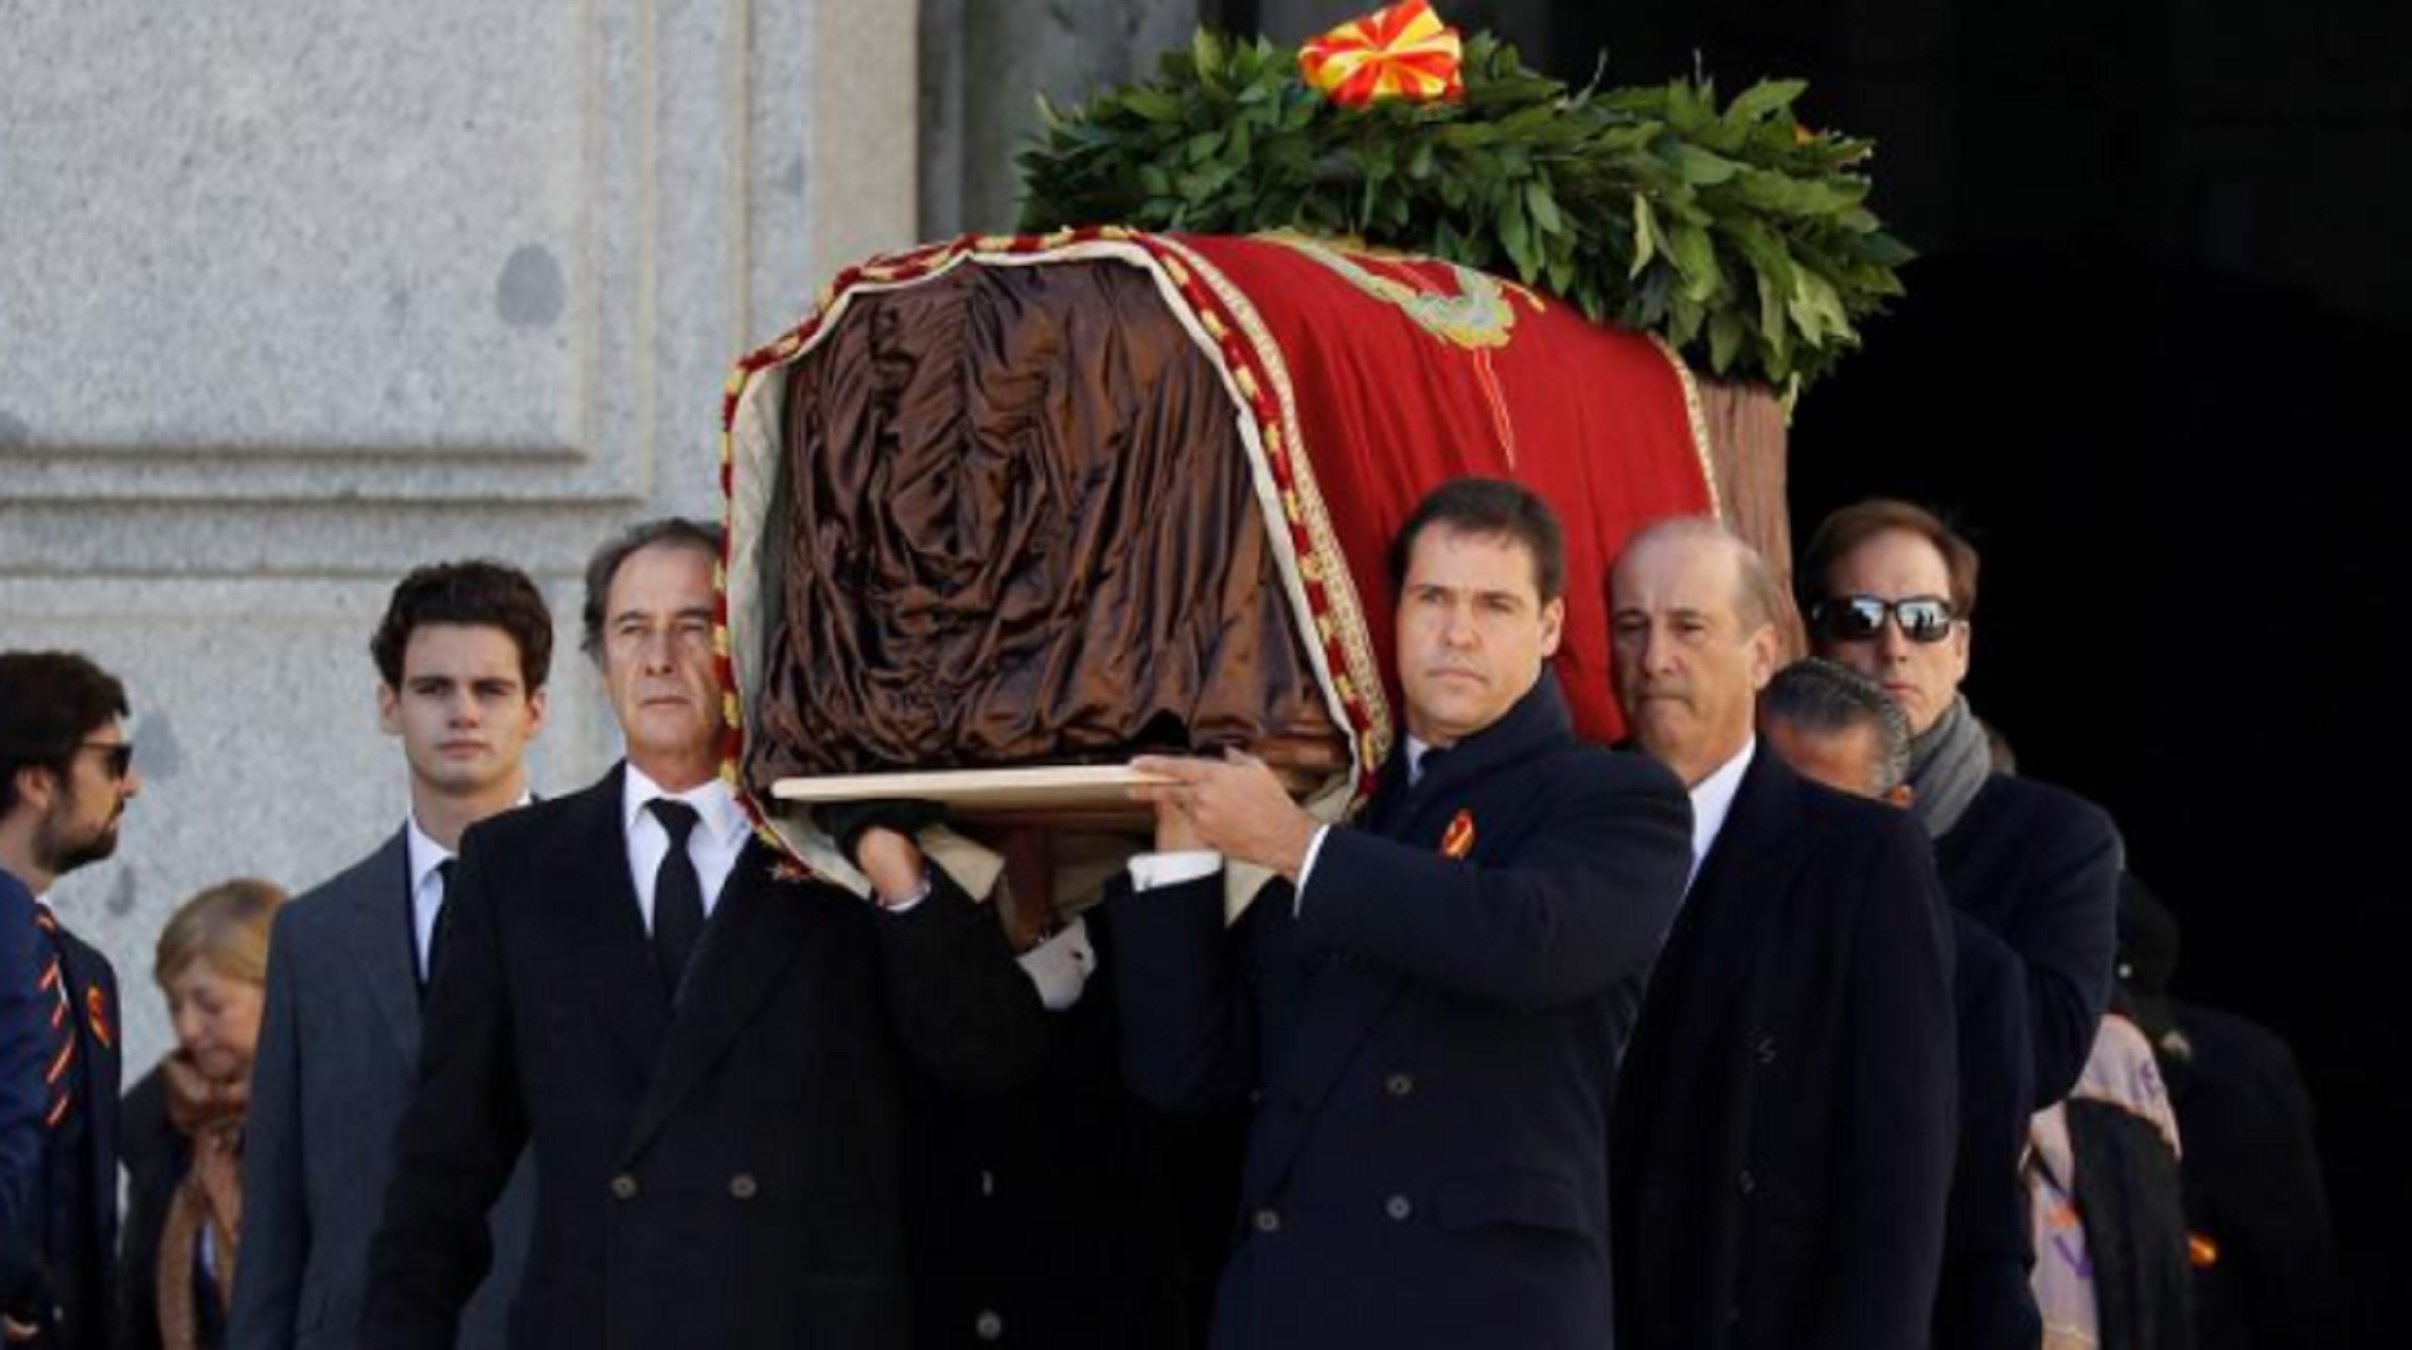 Un familiar del dictador Francisco Franco desobeeix i posa en risc la seva salut